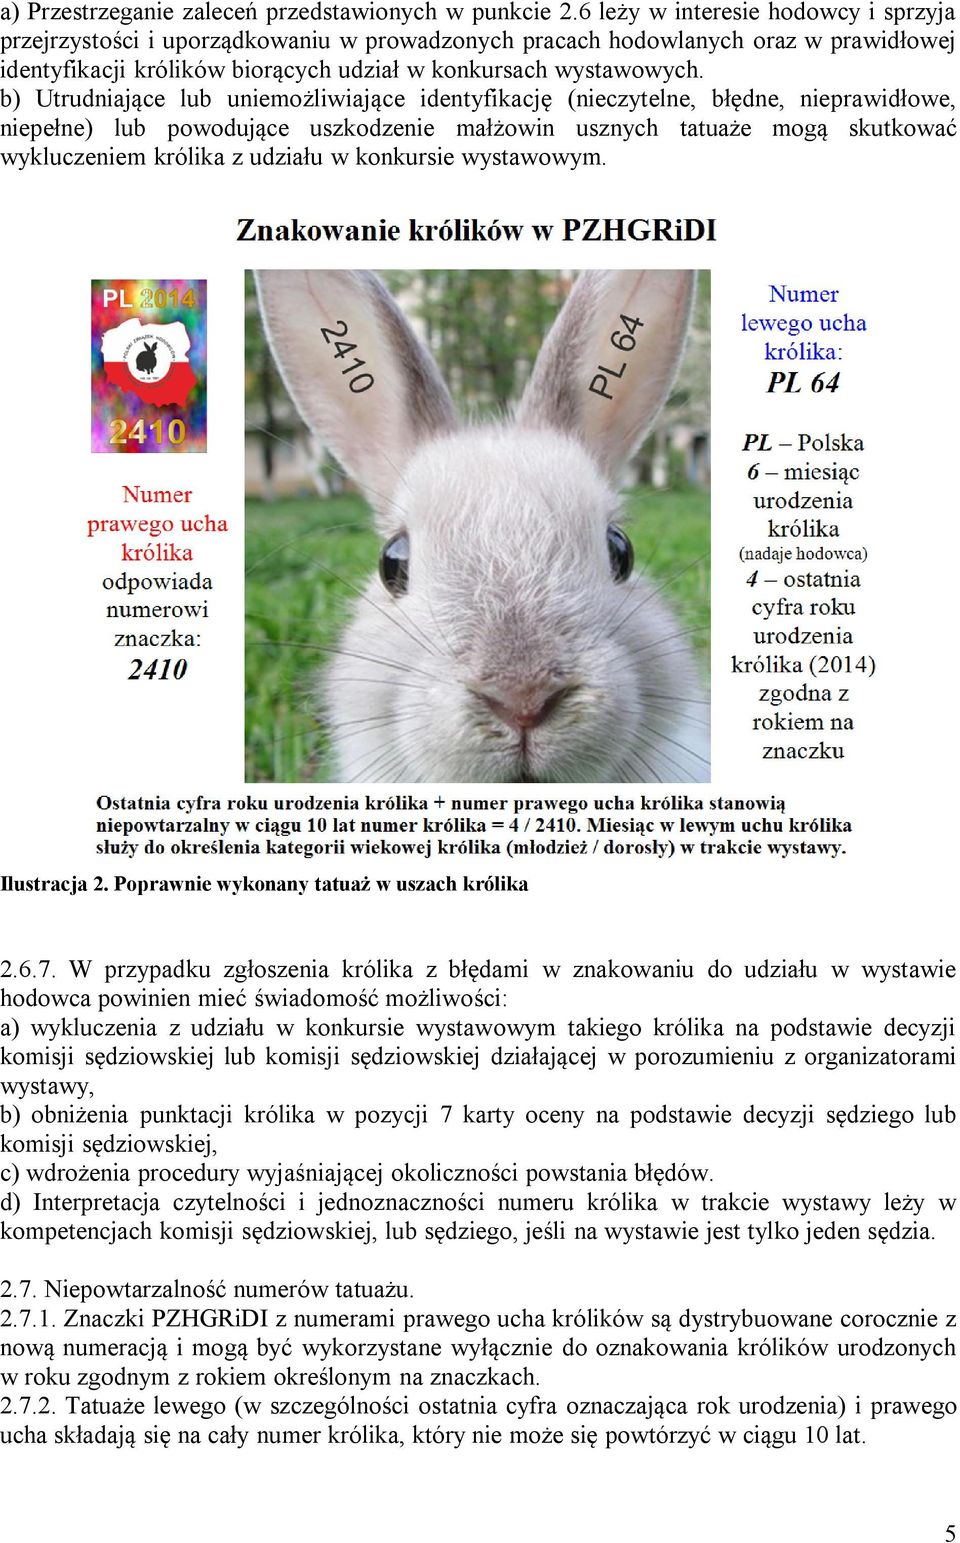 b) Utrudniające lub uniemożliwiające identyfikację (nieczytelne, błędne, nieprawidłowe, niepełne) lub powodujące uszkodzenie małżowin usznych tatuaże mogą skutkować wykluczeniem królika z udziału w